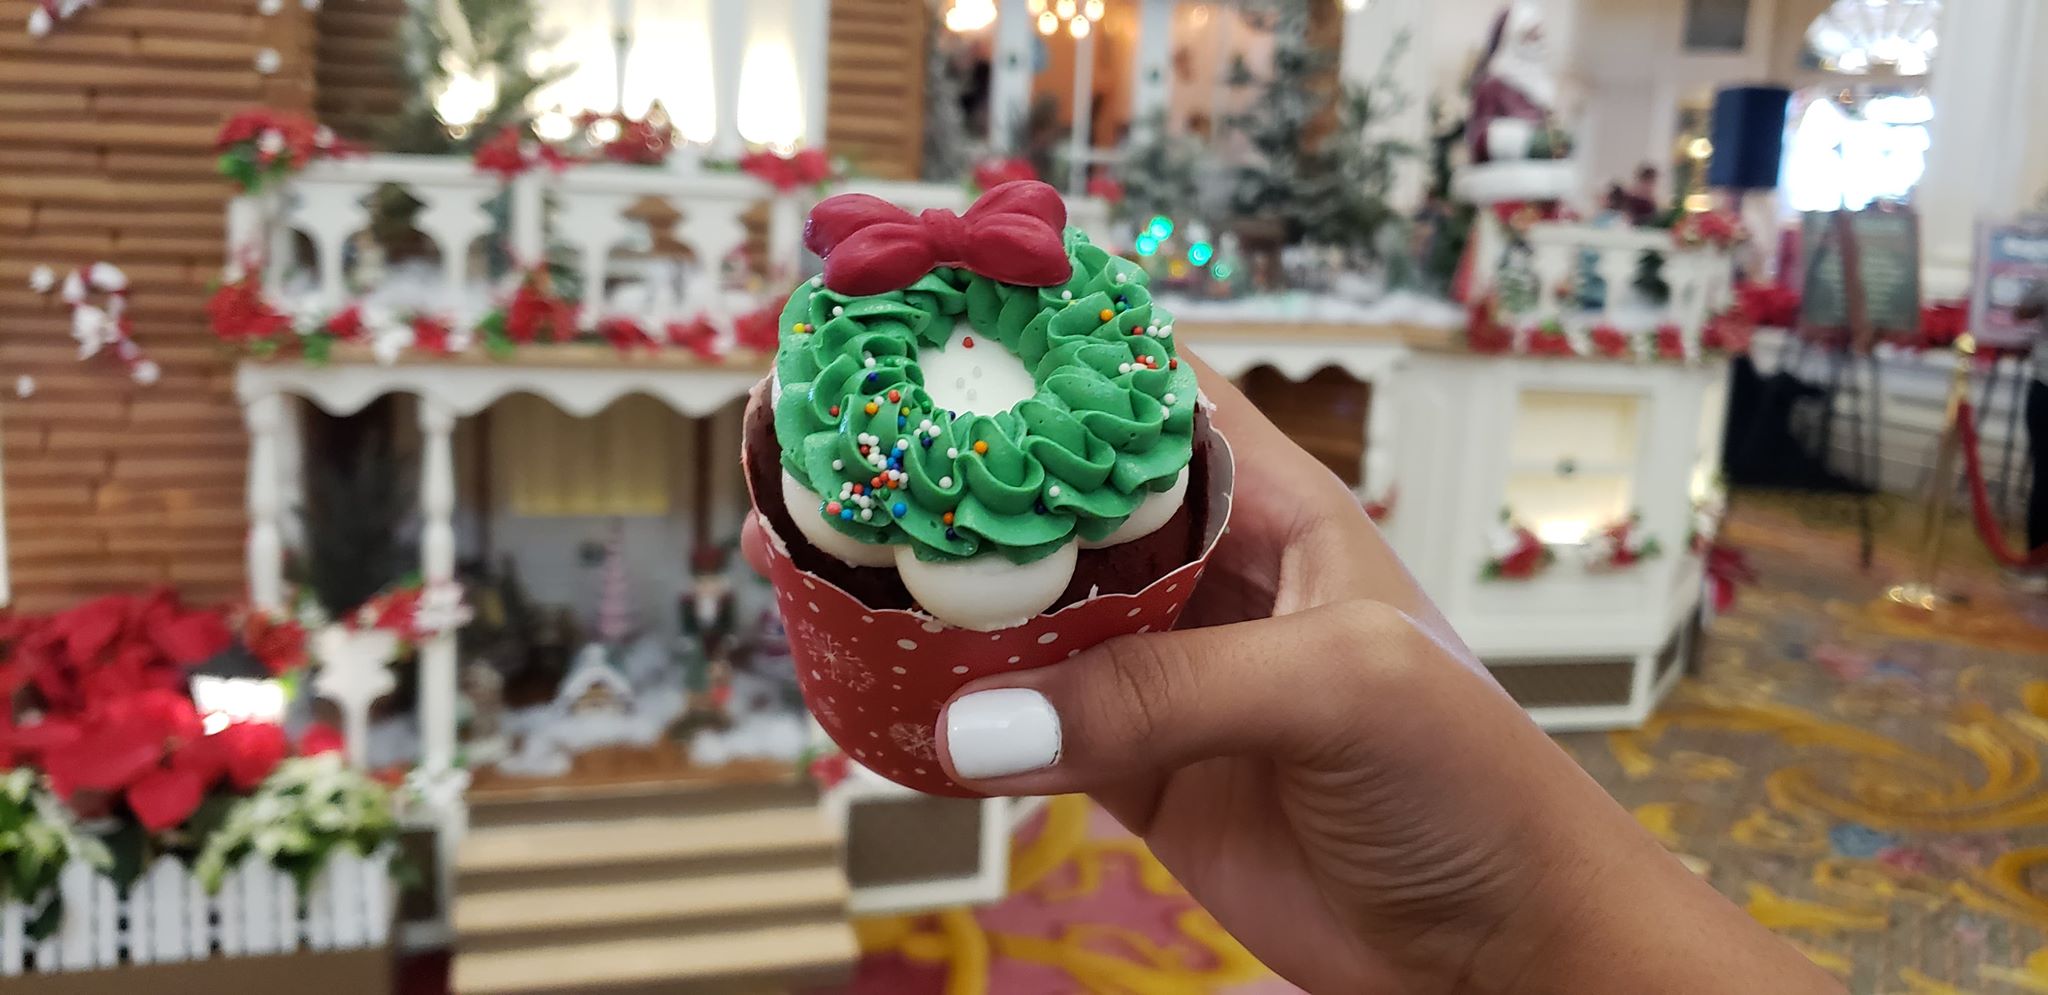 Photos: New Cupcake at Disney’s Grand Floridian Resort